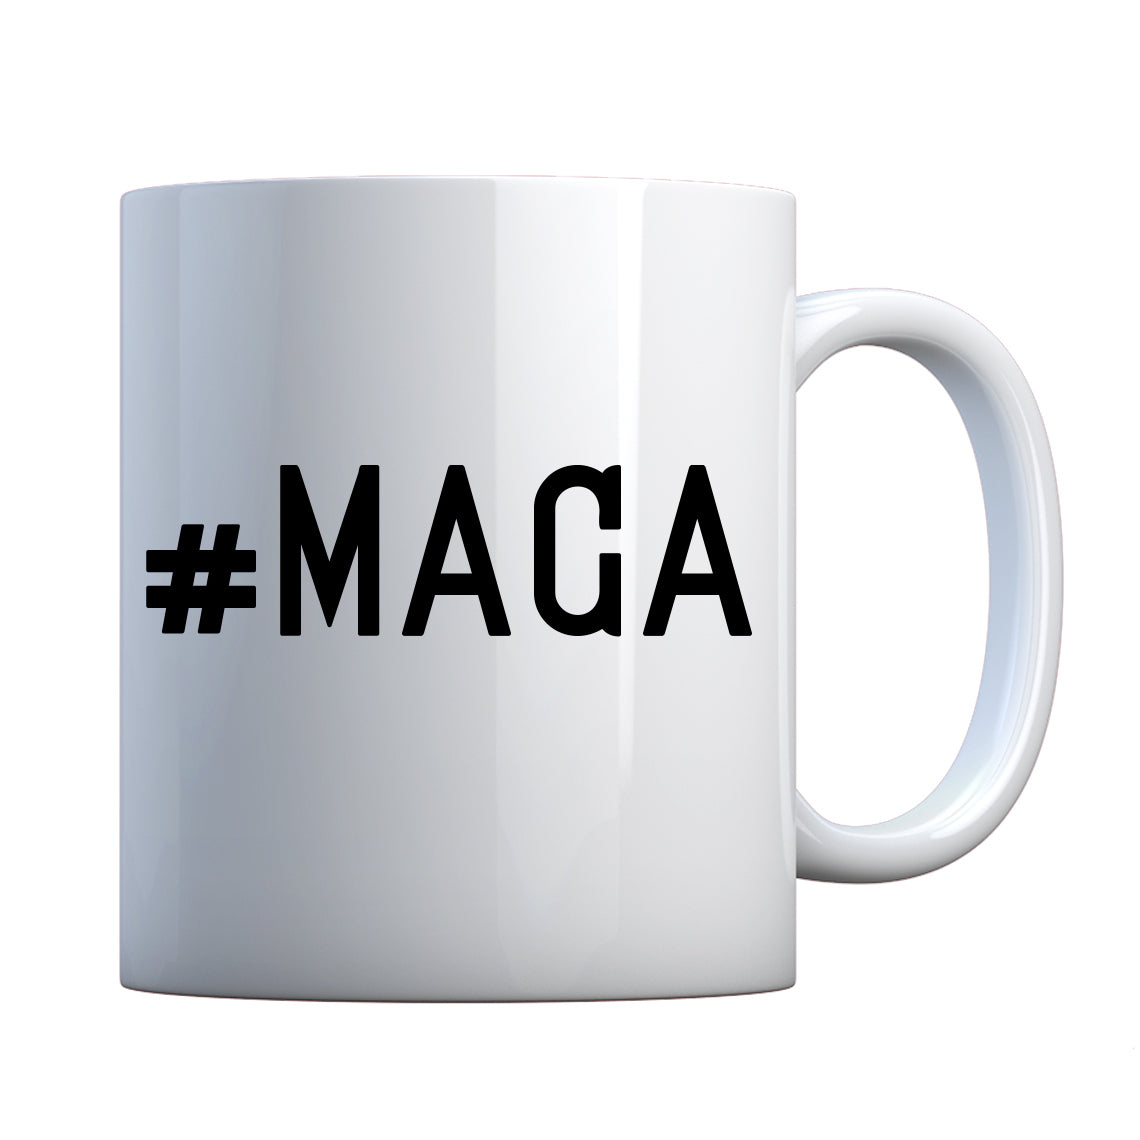 Mug #MAGA Ceramic Gift Mug